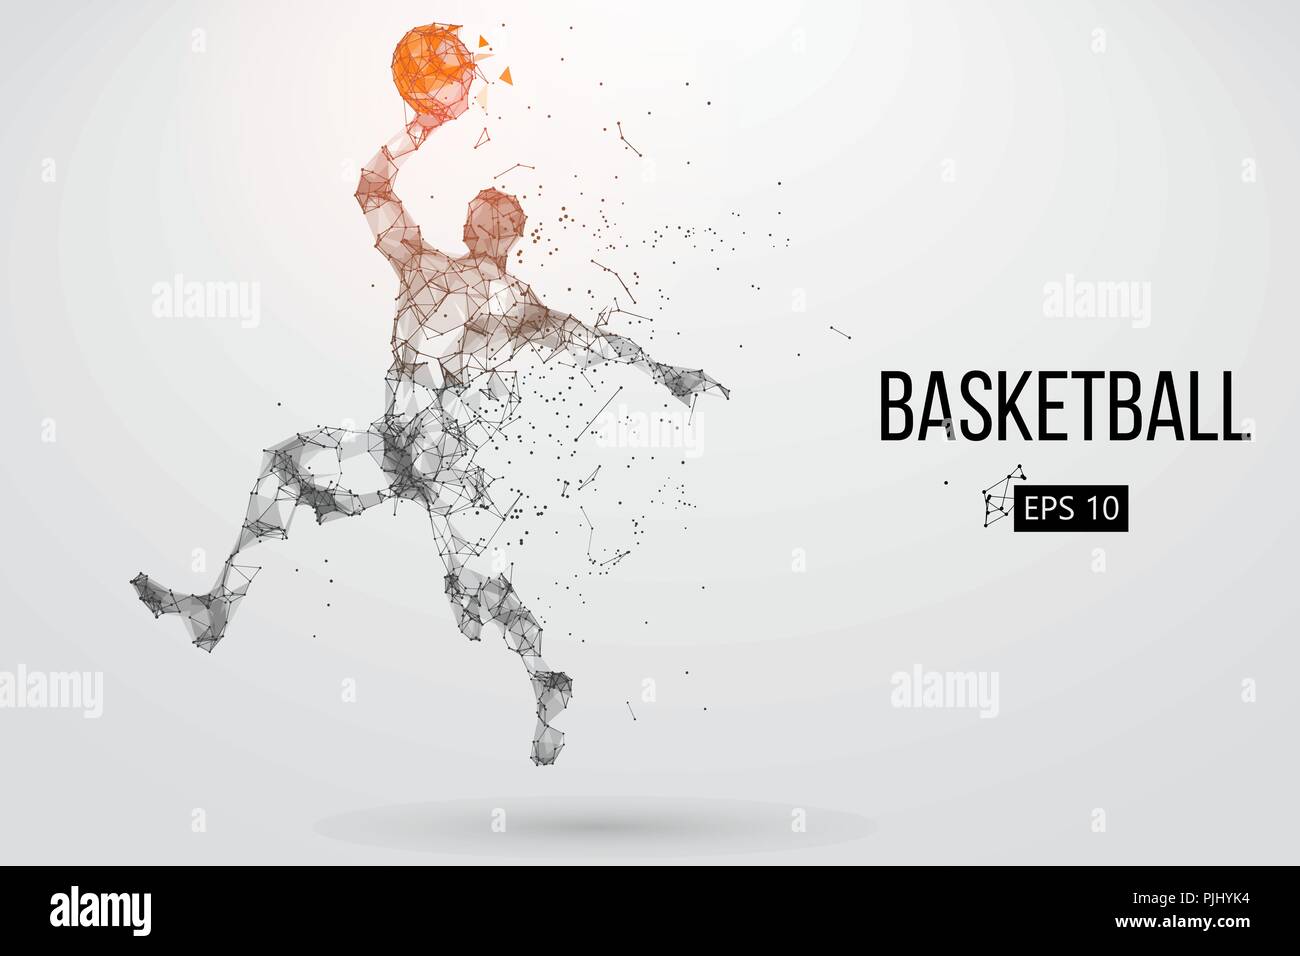 Silhouette eines Basketballspielers. Punkte, Linien, Dreiecke, Farbeffekte und Hintergrund auf einem separaten Layer, Farbe kann mit einem Klick geändert werden. Vecto Stock Vektor